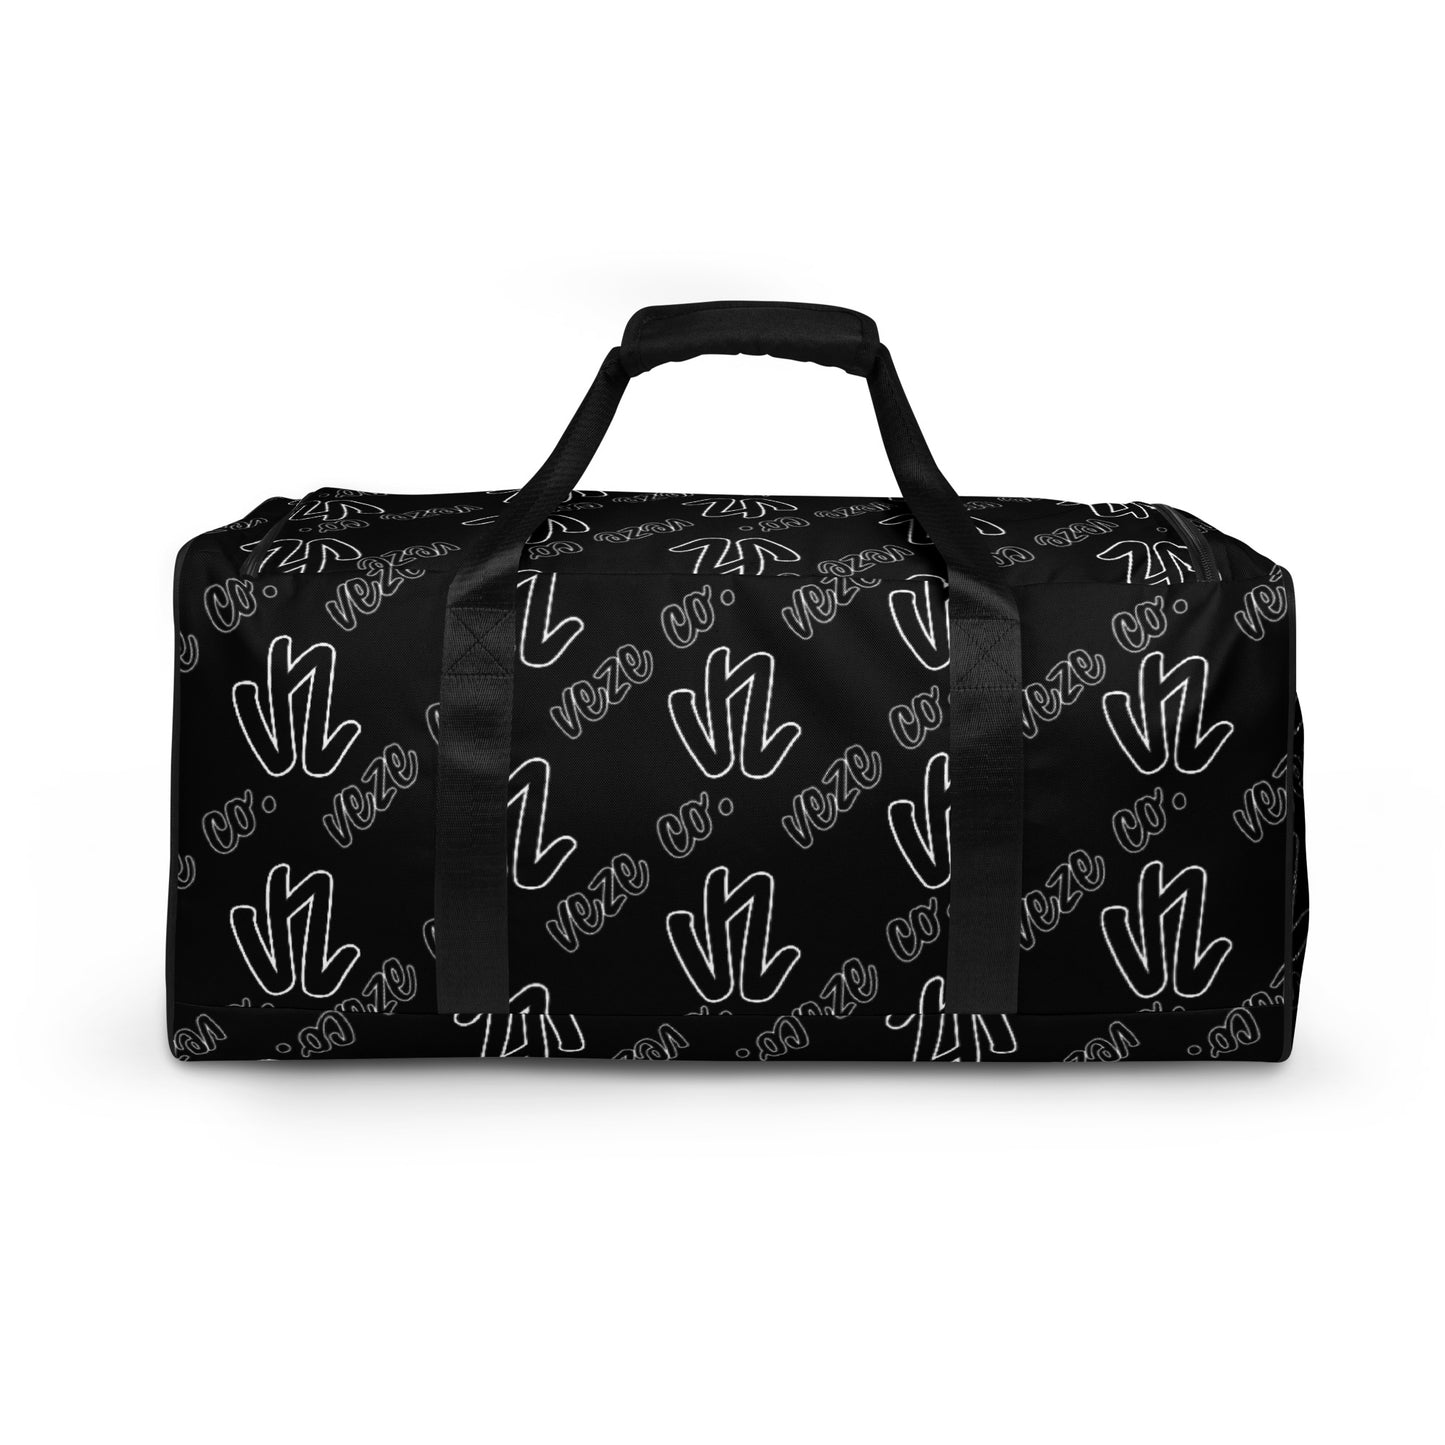 VeZe Co. VZ-003 Pattern Duffle Bag